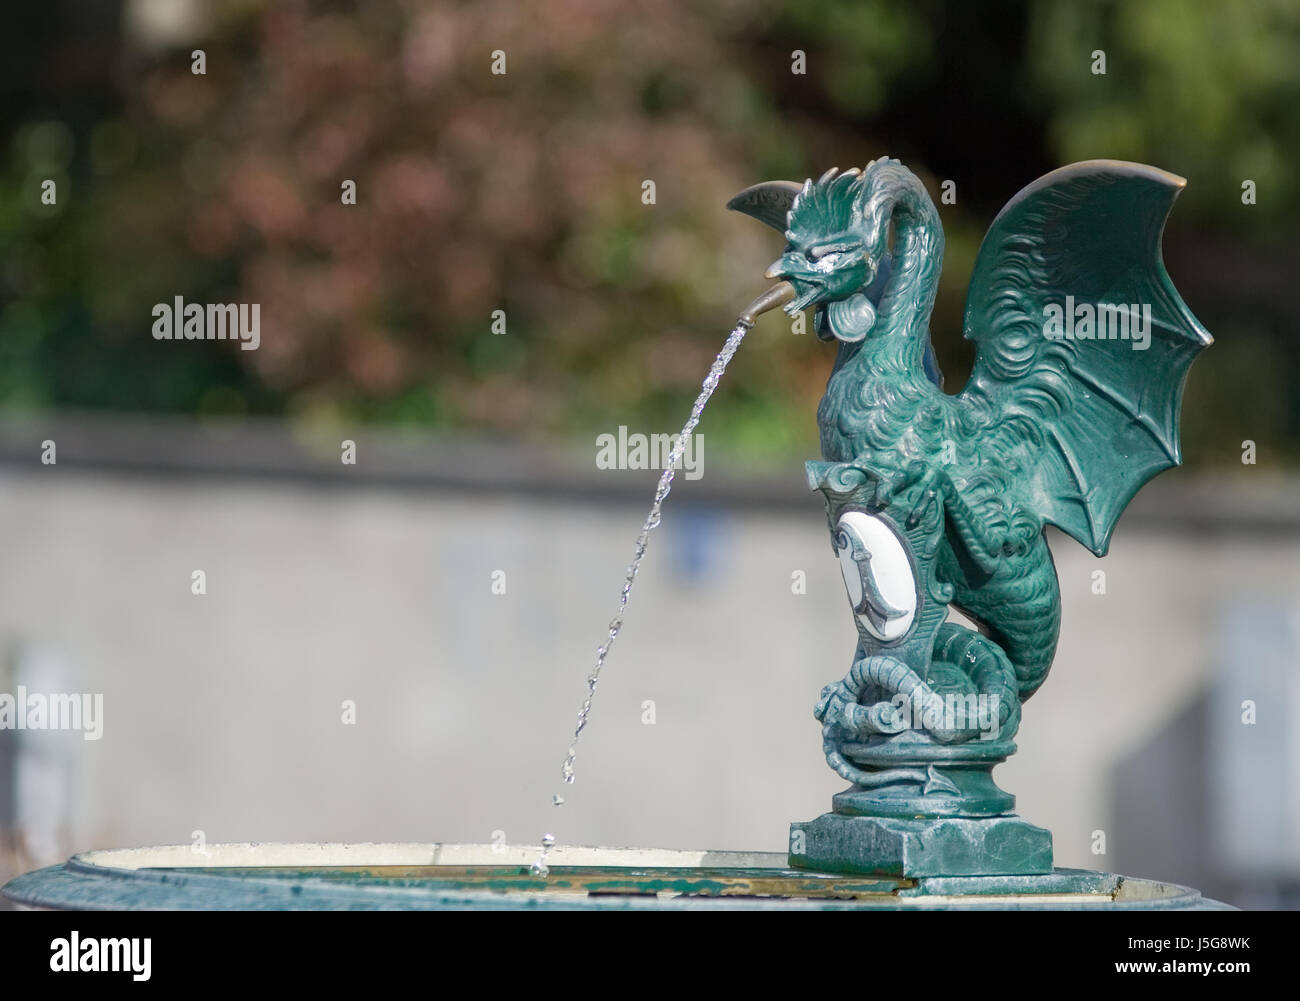 Stadt Stadt symbolischen Tod Tier grüne Schweiz Brunnen Drachen Mythologie  Stockfotografie - Alamy